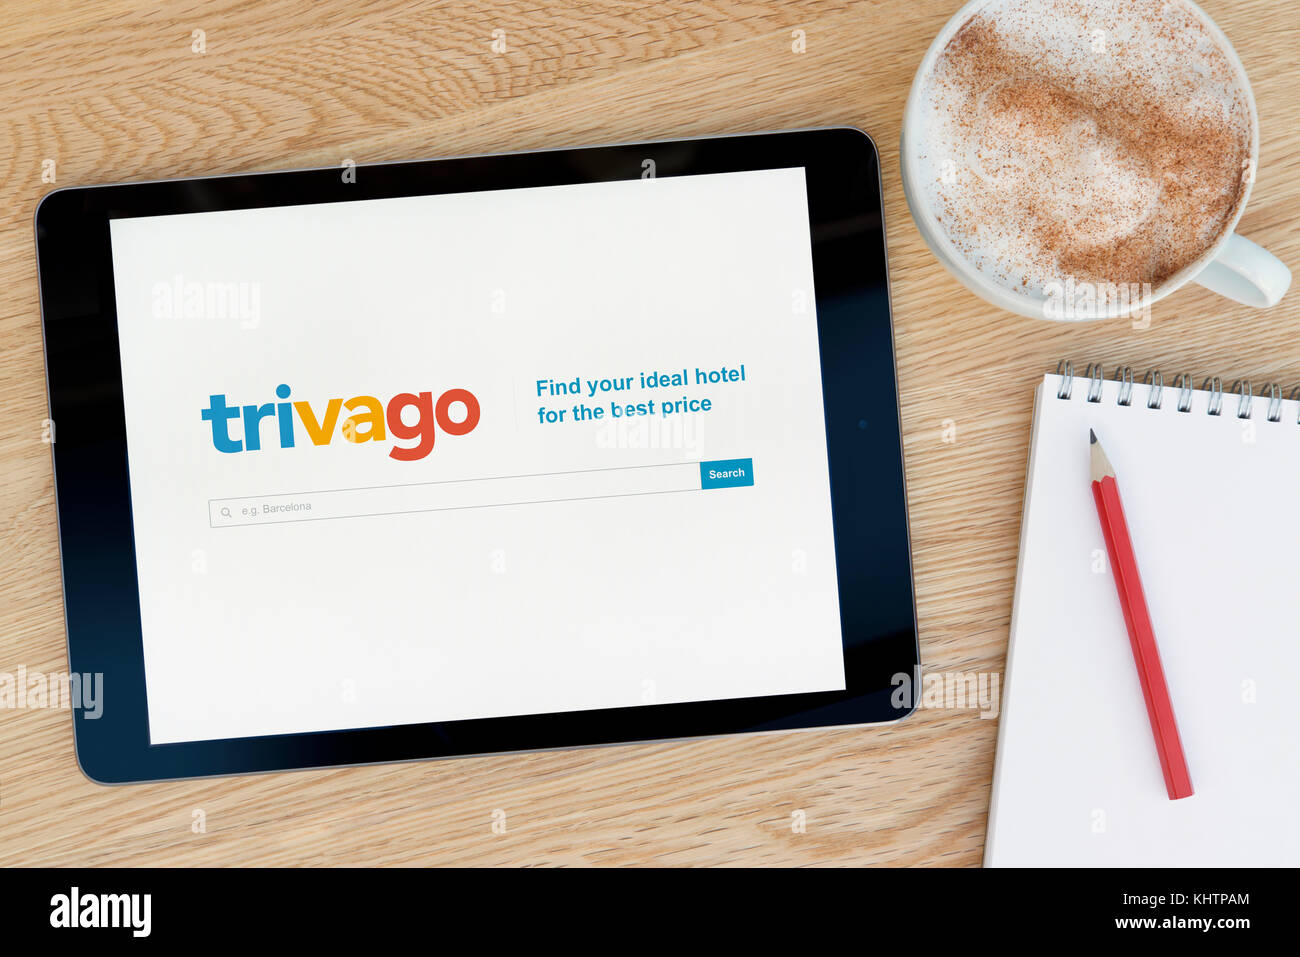 Le site web dispose d'un sur trivago iPad tablet device qui repose sur une table en bois à côté d'un bloc-notes et un crayon et une tasse de café (rédaction uniquement) Banque D'Images